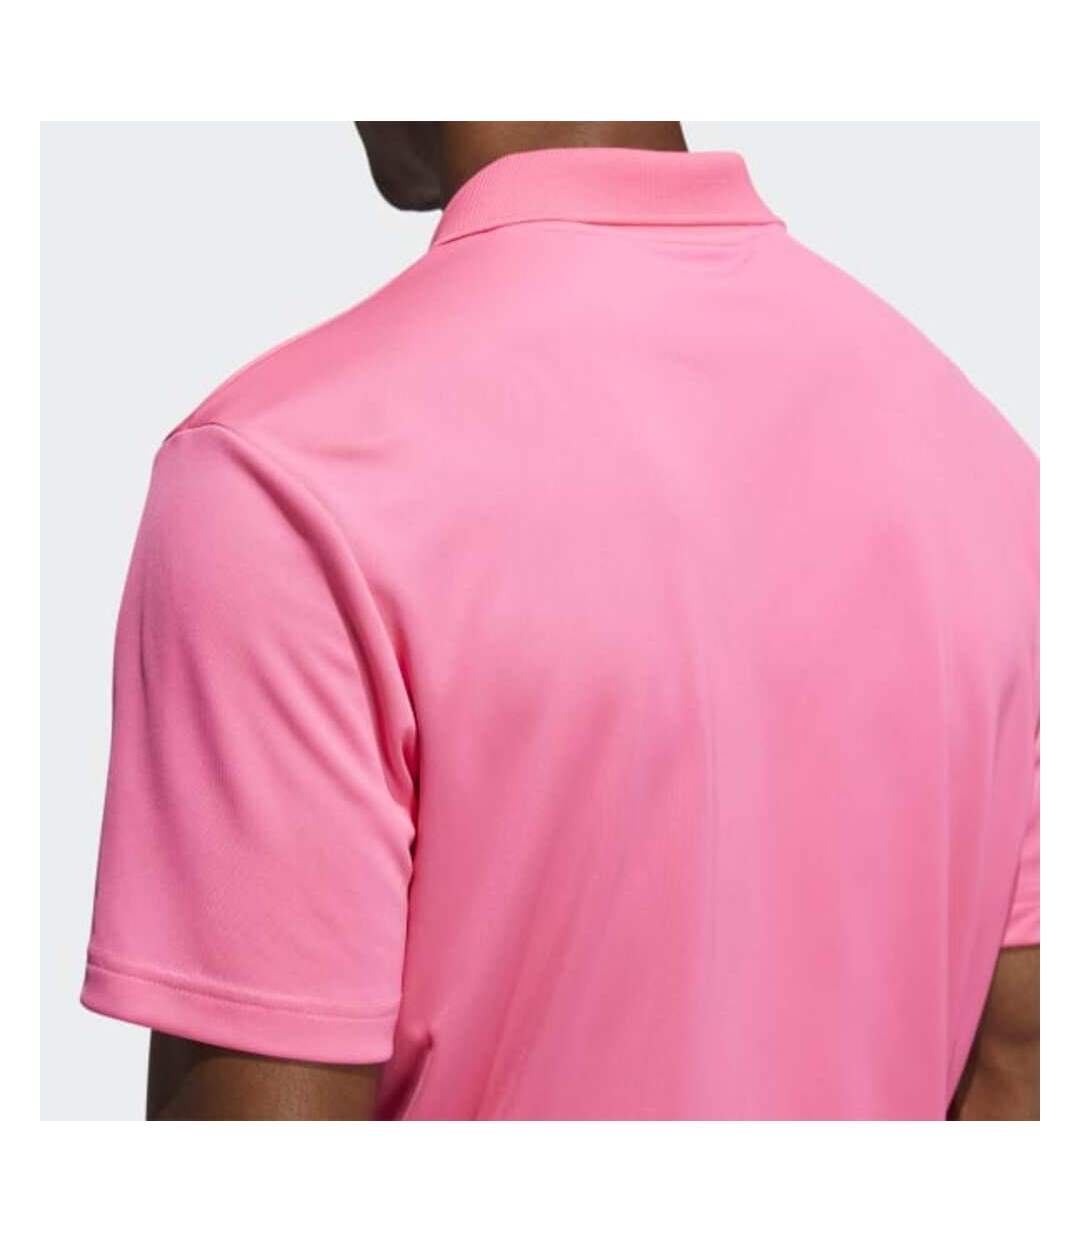 Adidas Mens Polo Shirt (Pink)